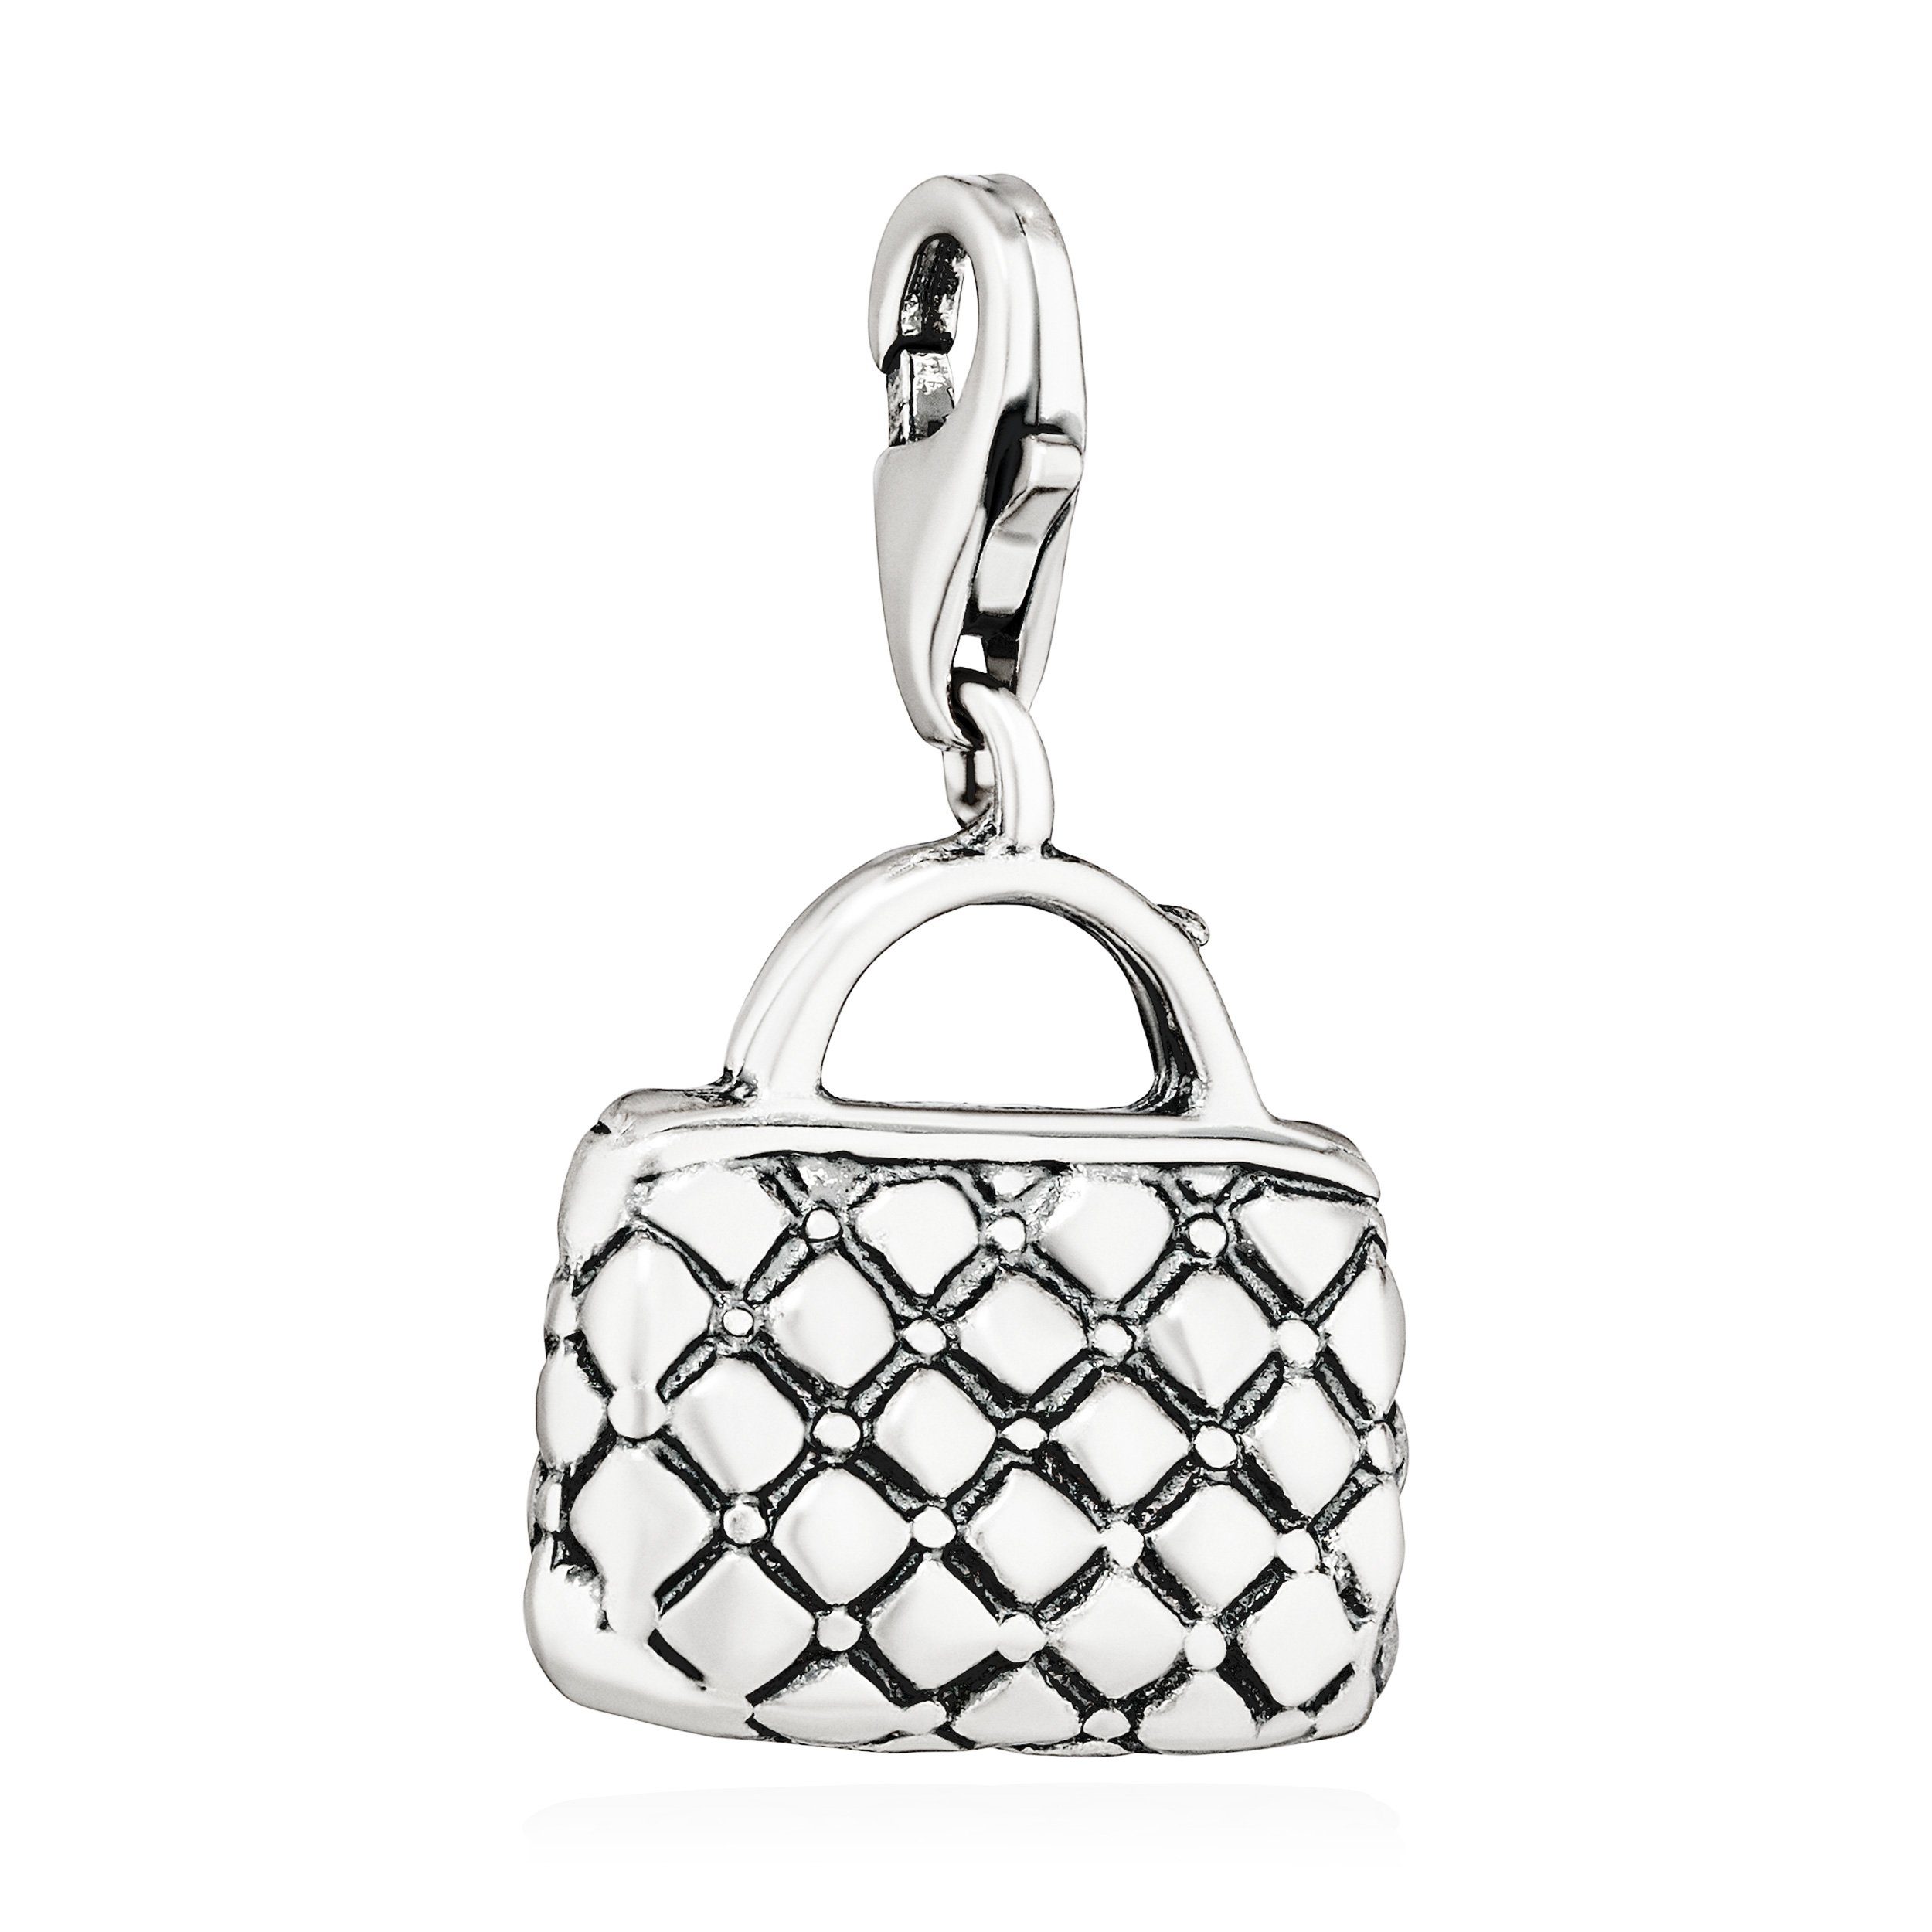 16x14mm 925 antik Silber Charm-Anhänger Damen Silb NKlaus Shopping Kettenanhänger Handtasche